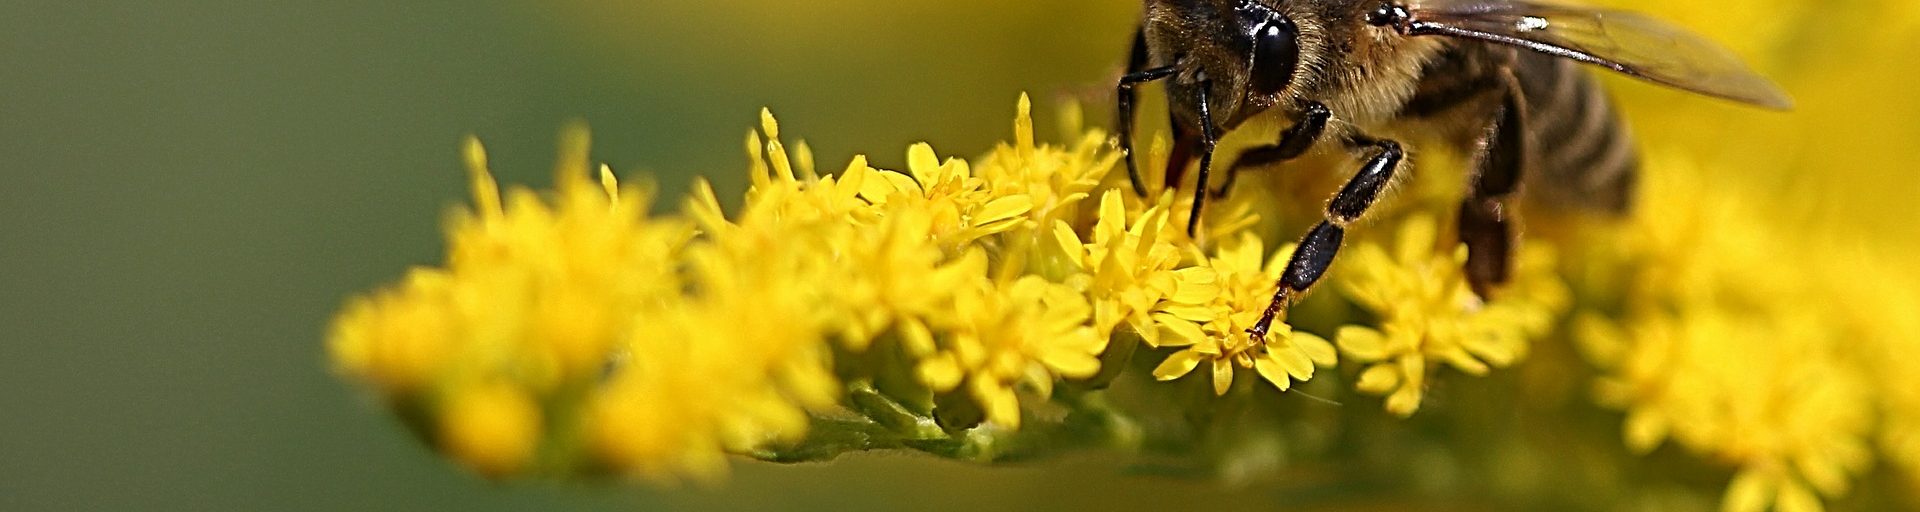 Biene auf gelber Pflanze